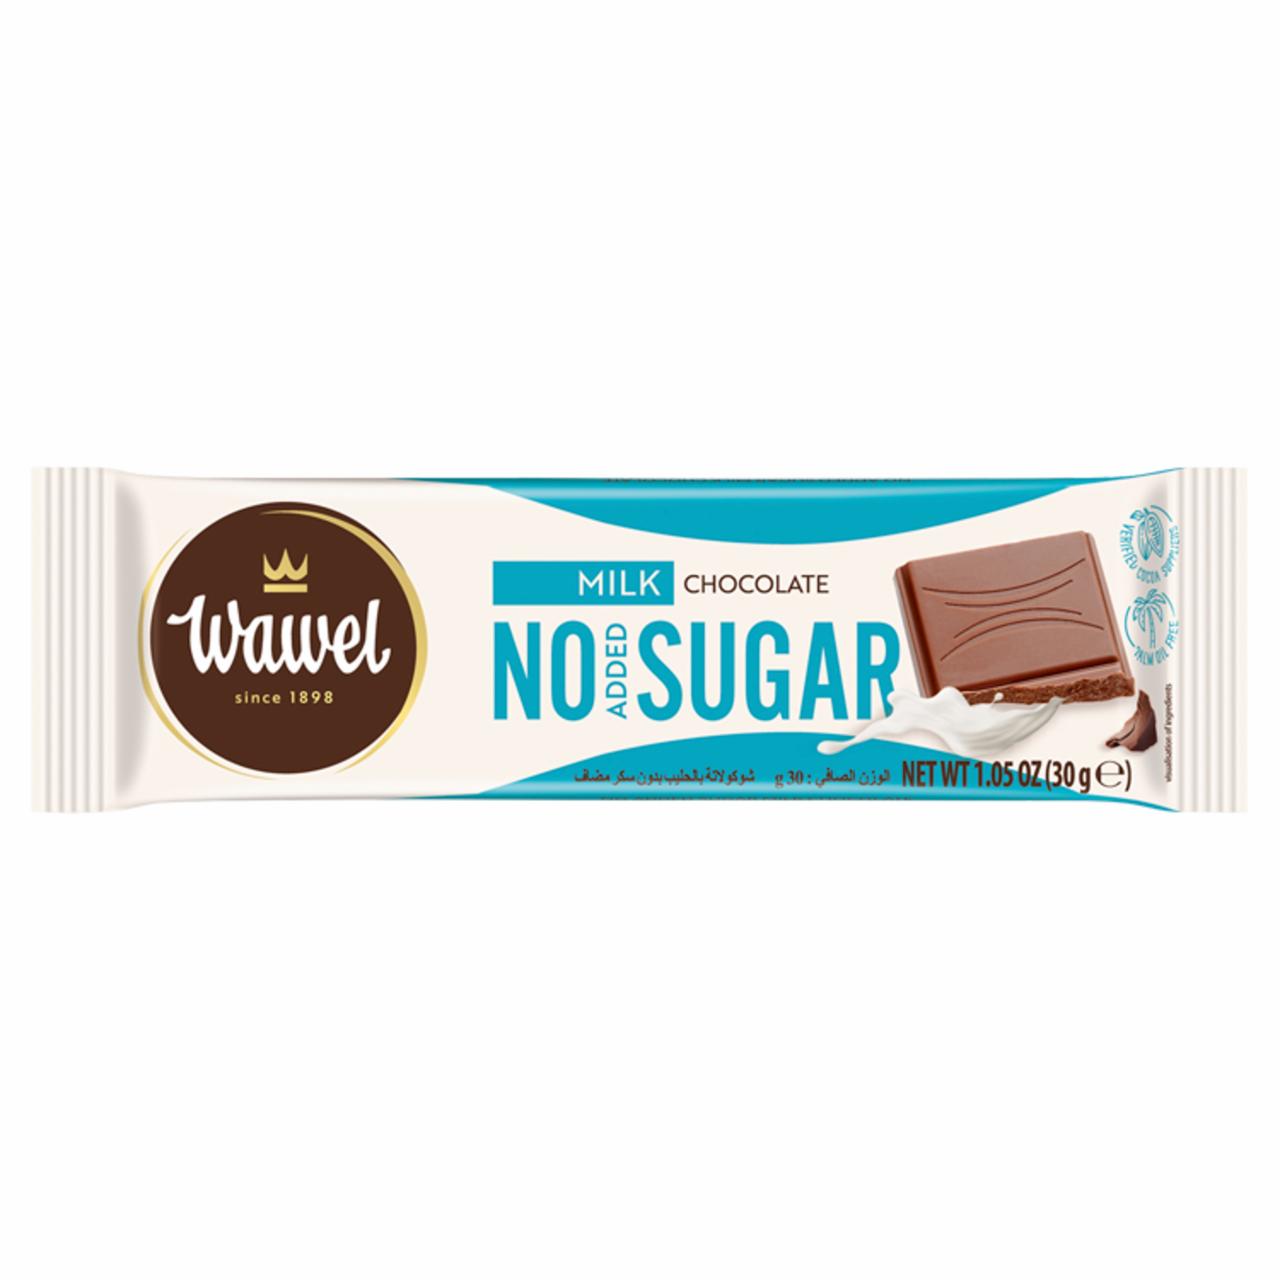 Képek - Wawel tejcsokoládé hozzáadott cukor nélkül, édesítőszerrel 30 g